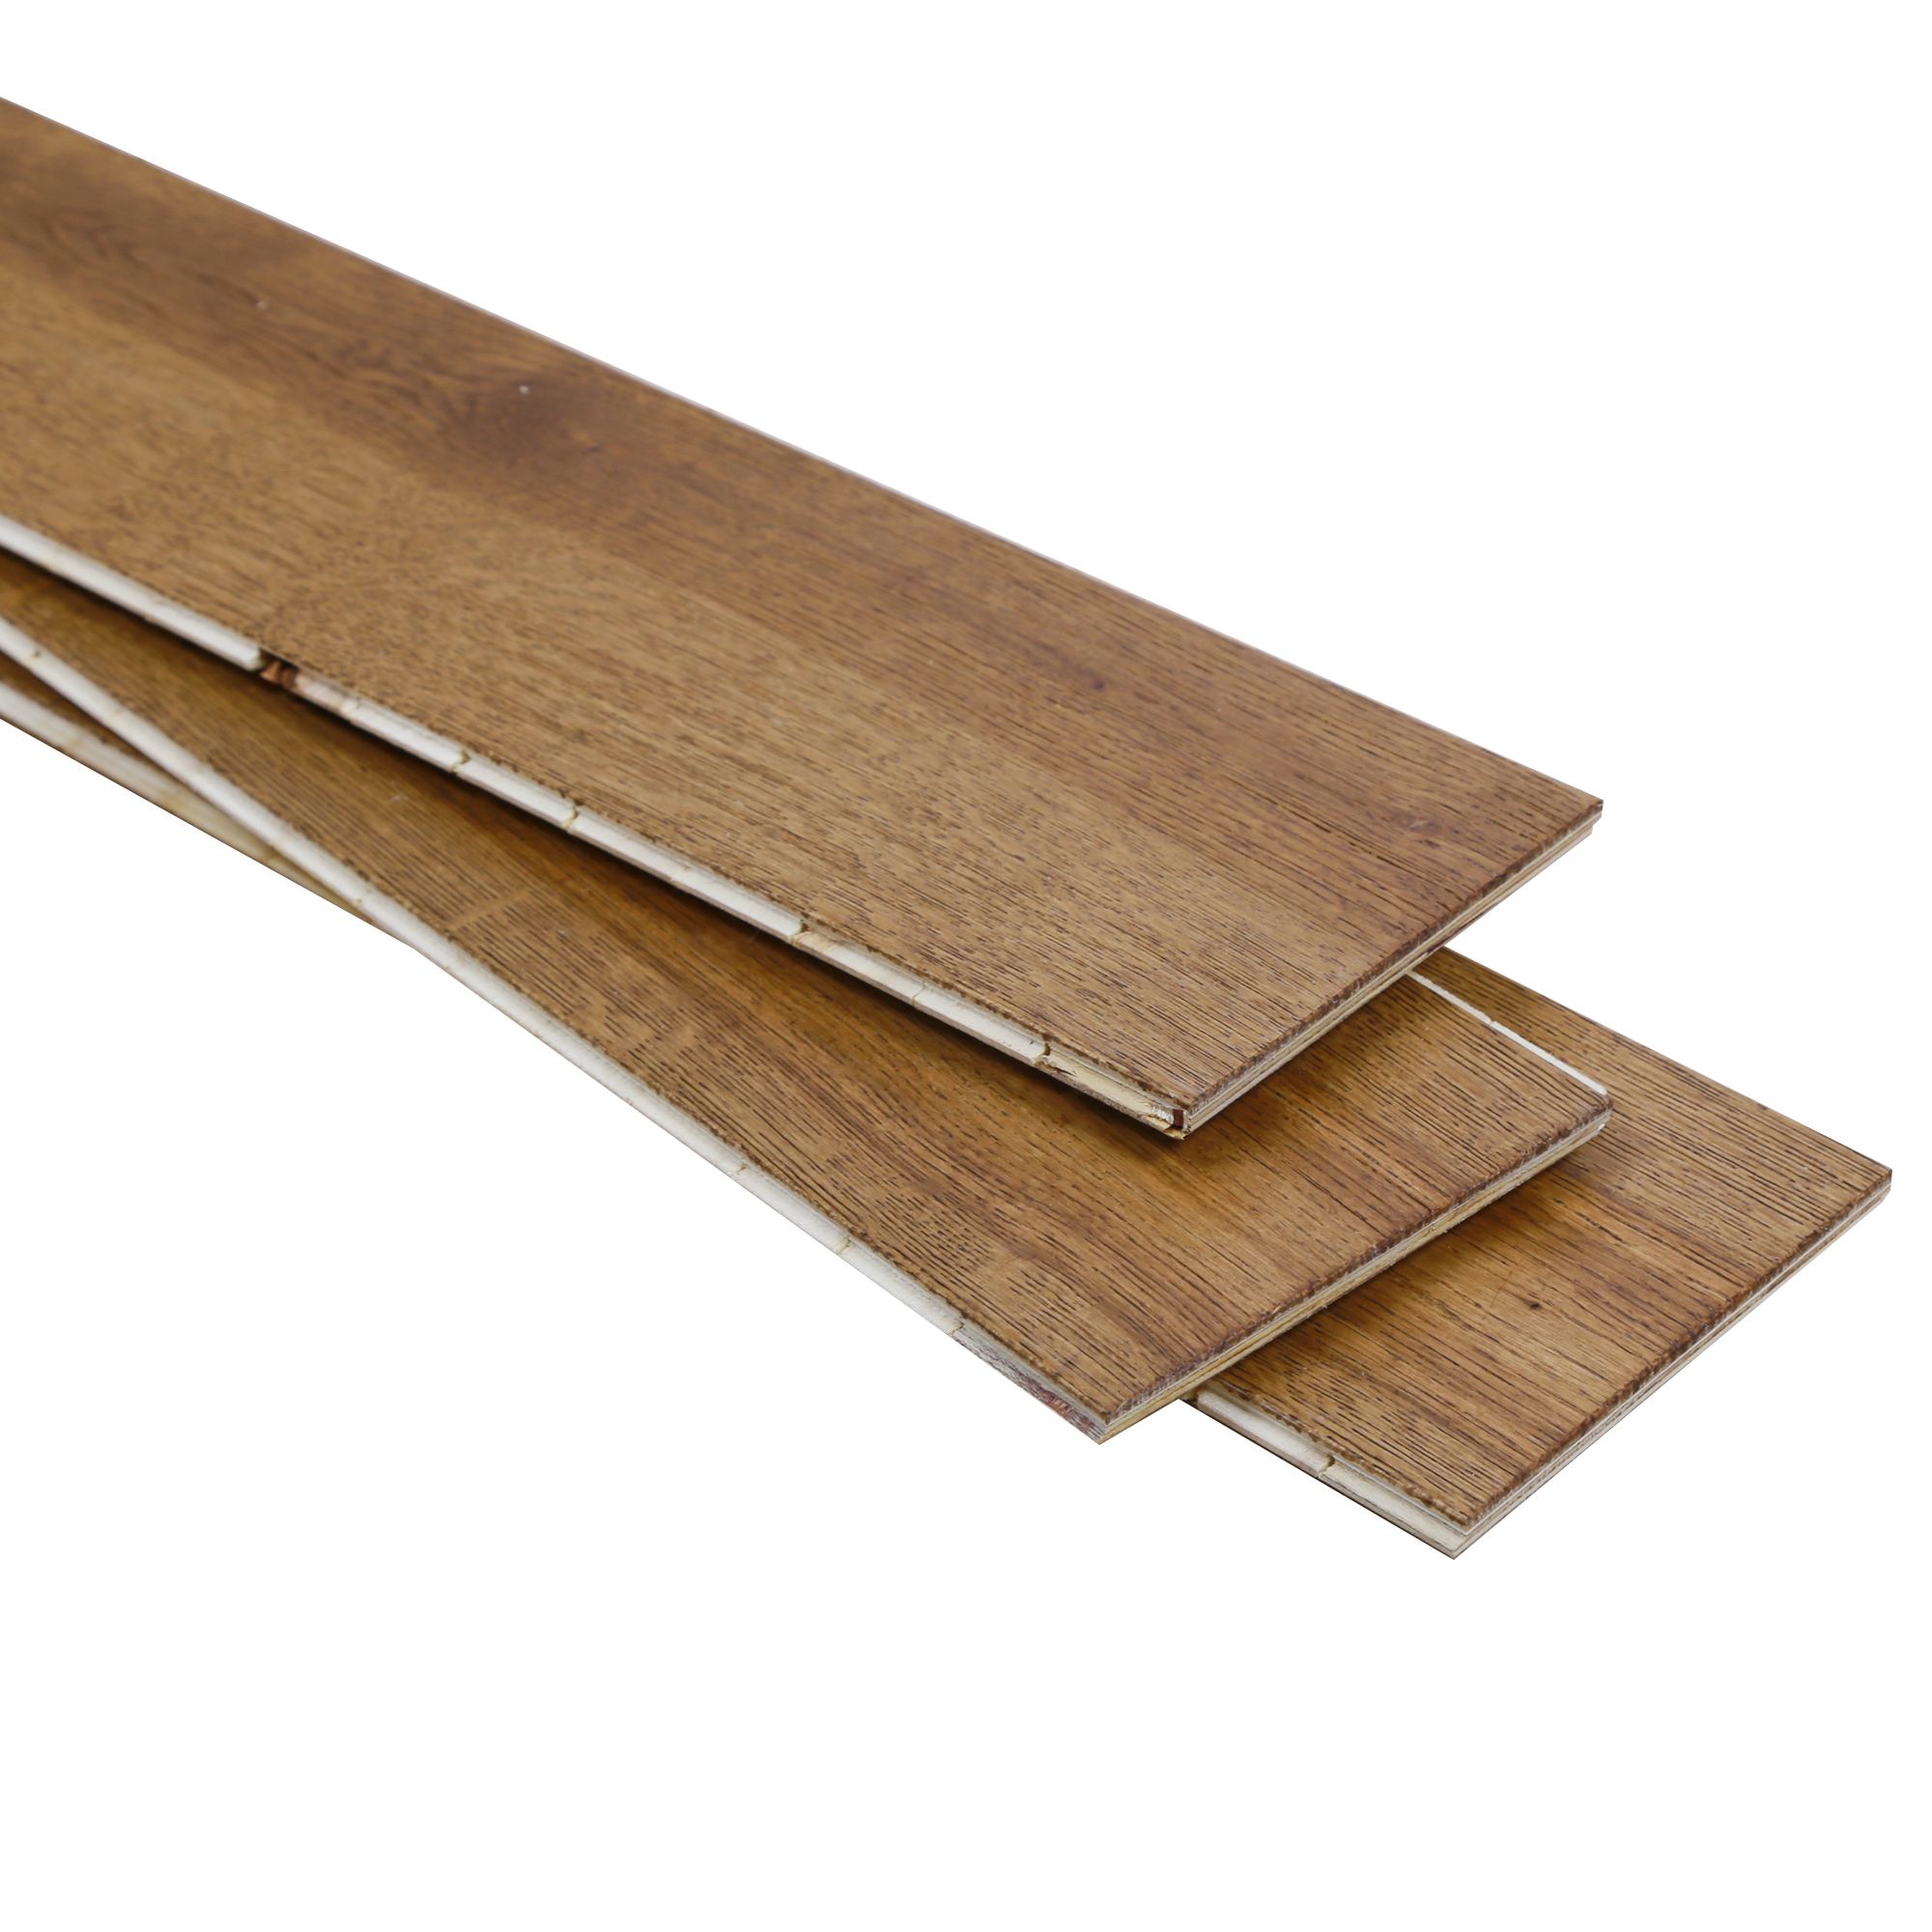 GoodHome Rustic Brown Oak Engineered Real wood top layer flooring, 1.35m² Pack of 1